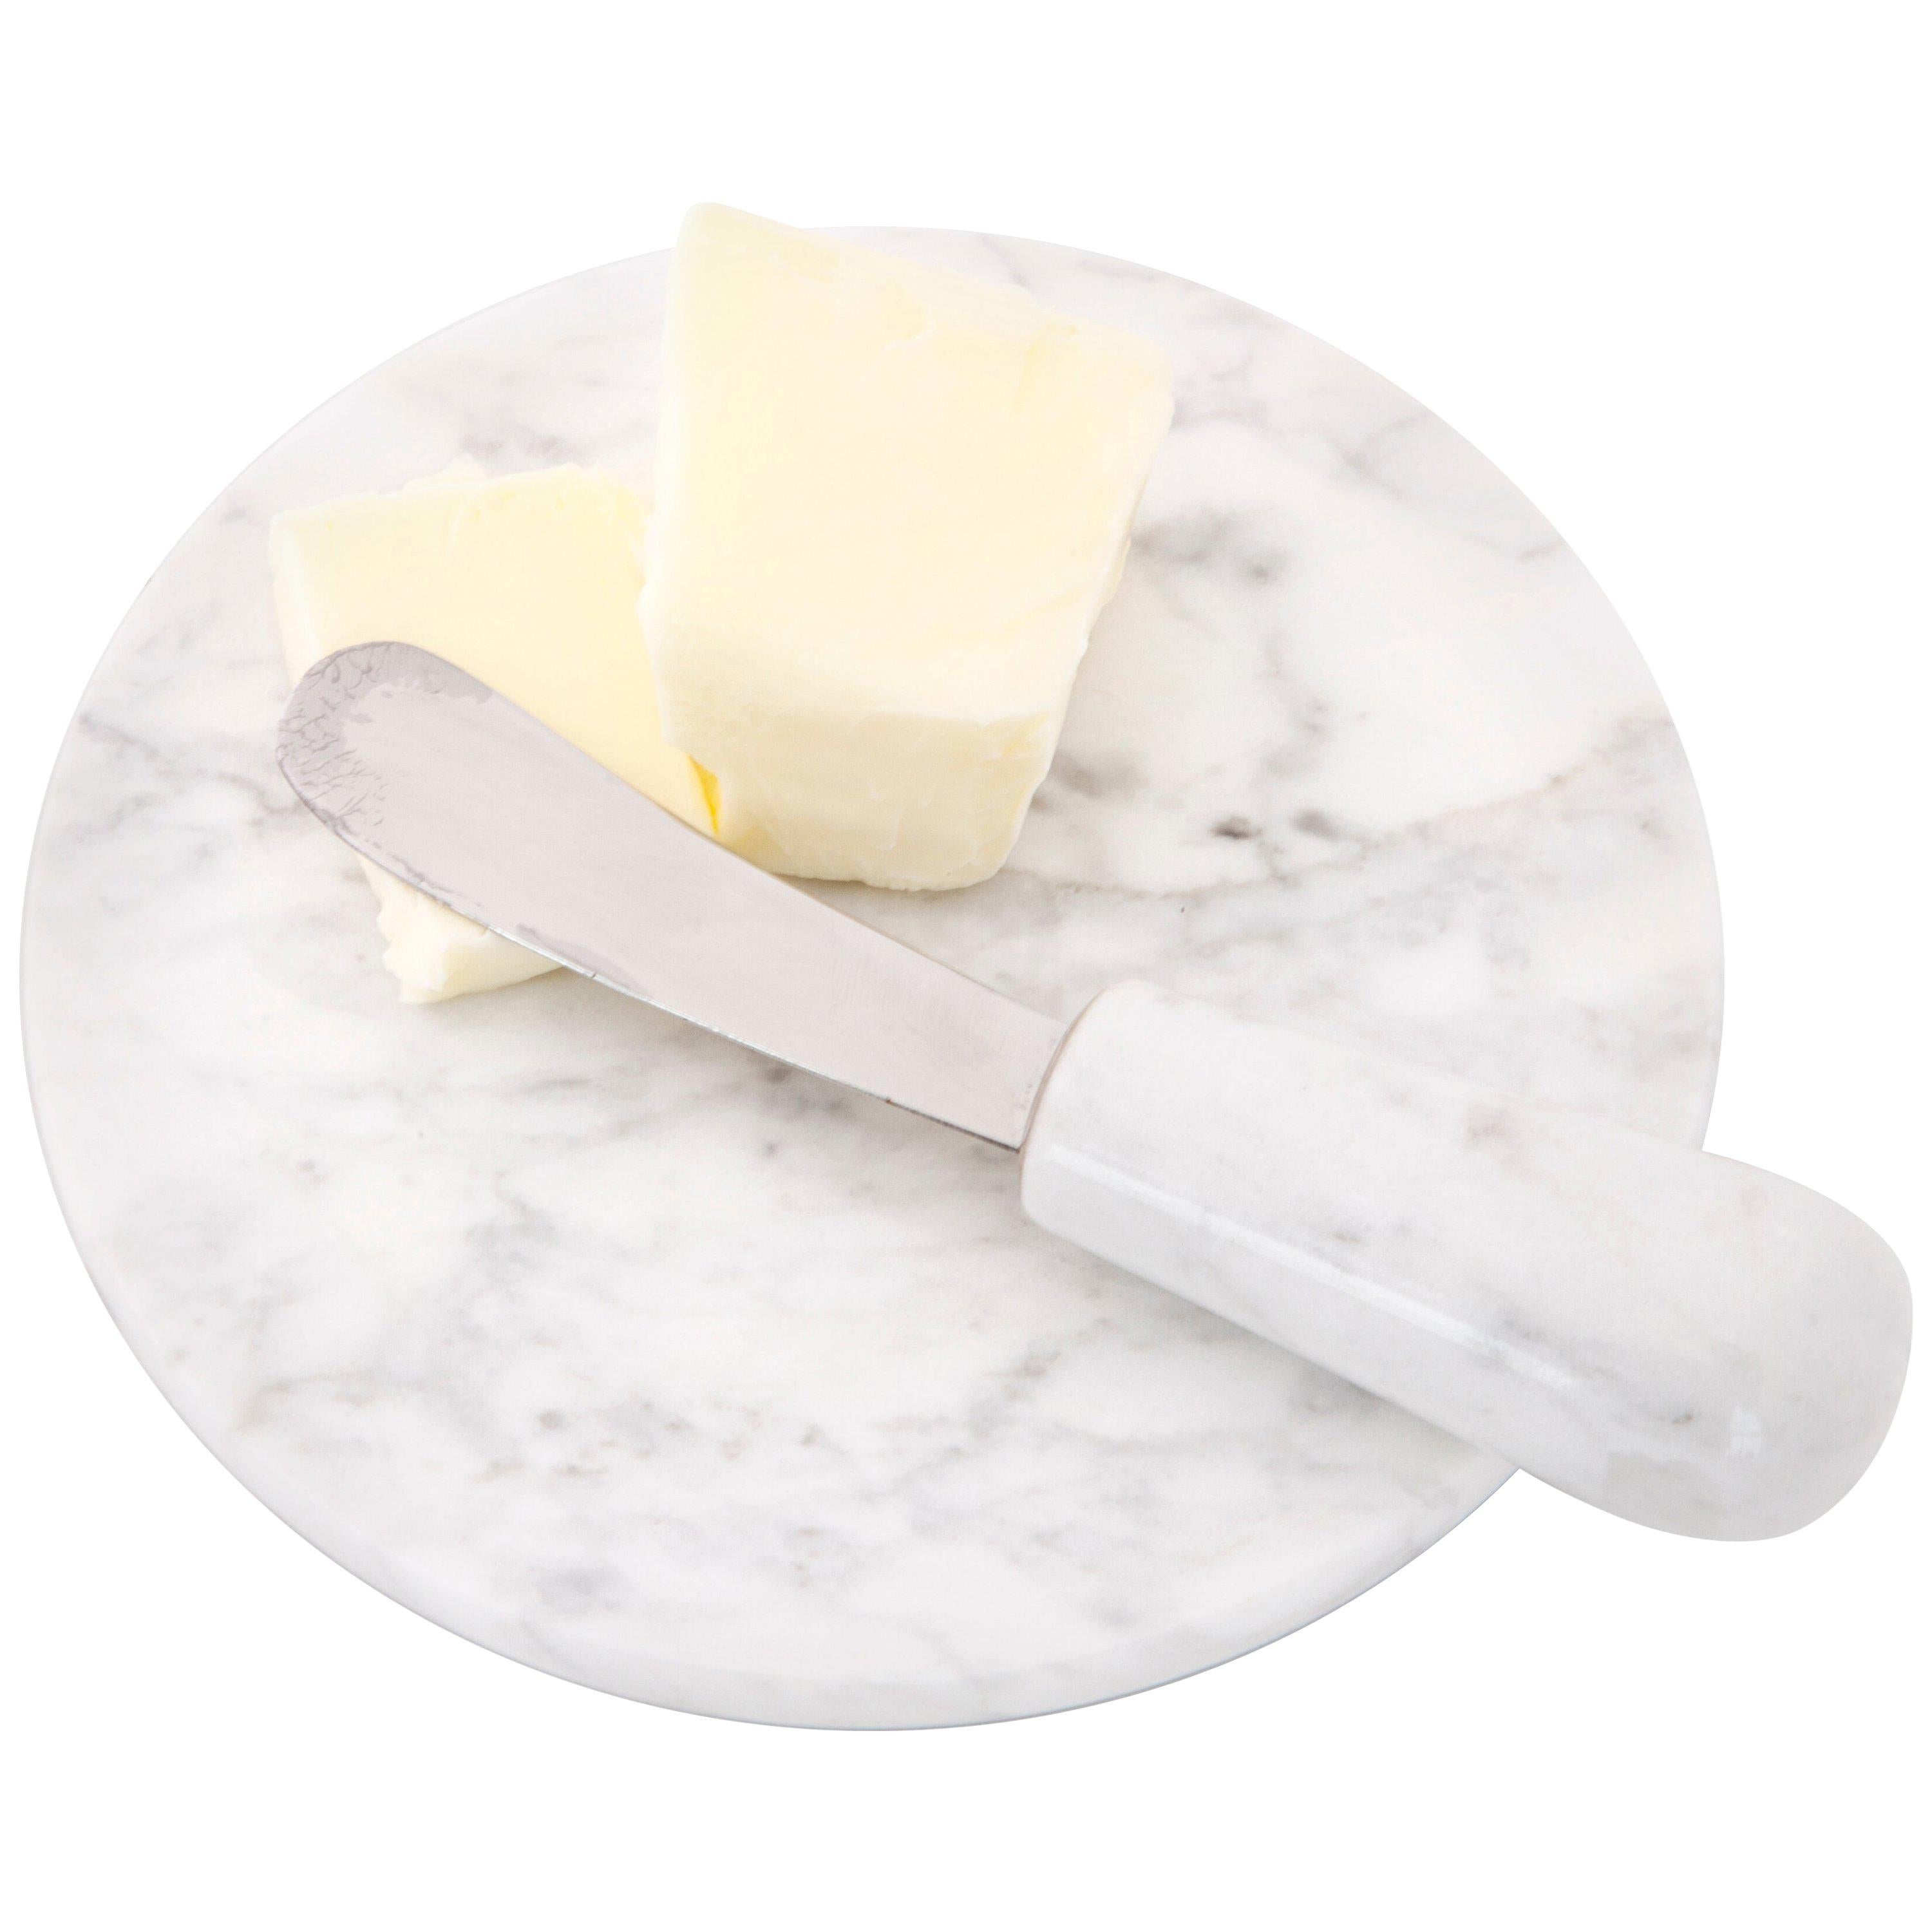 Handgefertigtes Buttermesser und Teller aus weißem Carrara-Marmor